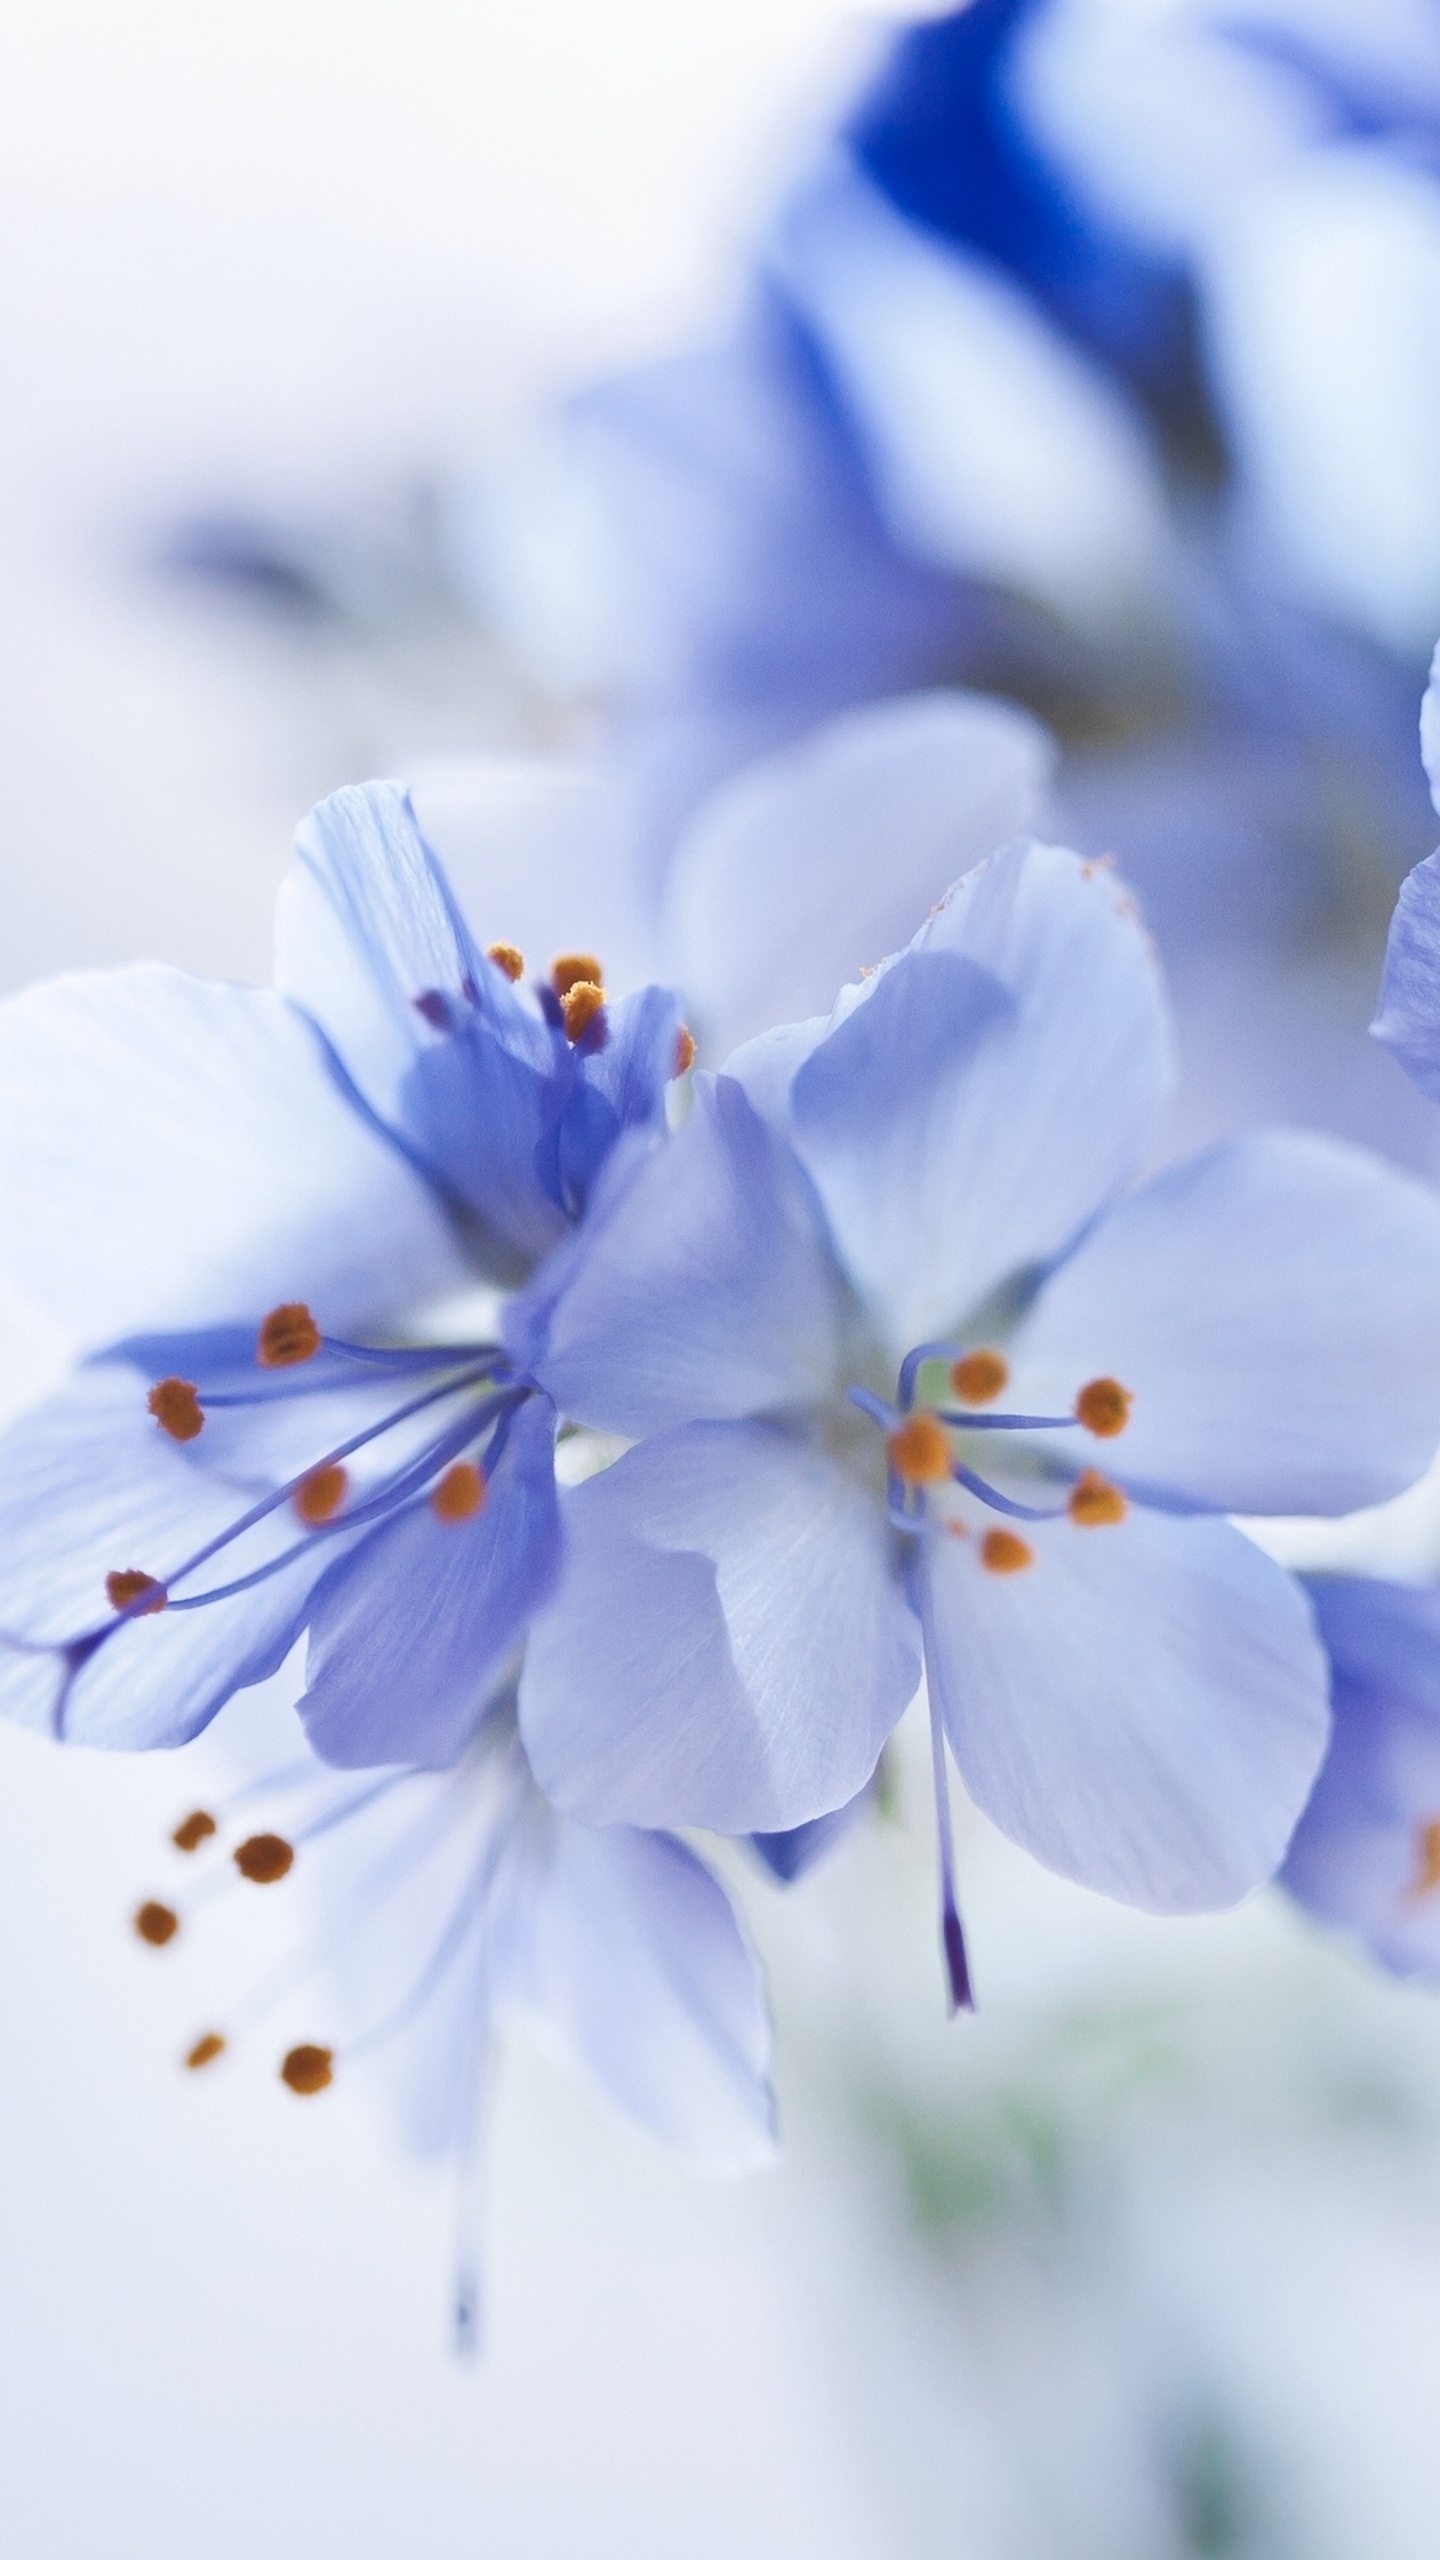 White and Blue Flowers in Tilt Shift Lens. Wallpaper in 1440x2560 Resolution